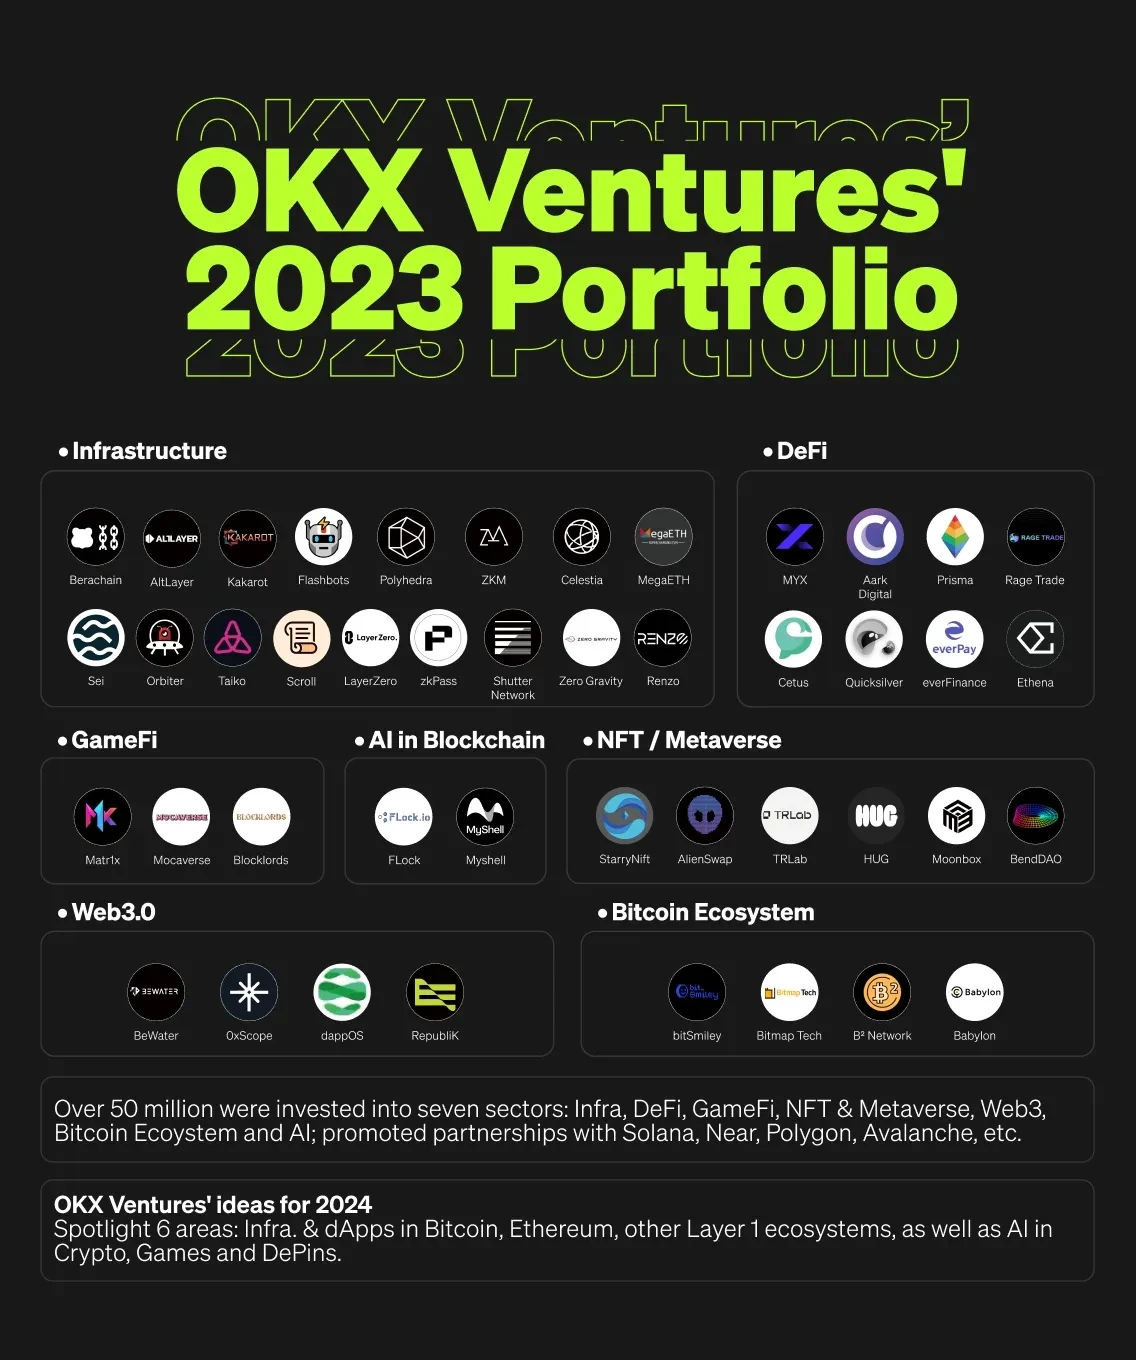 OKX Ventures' 2023 Portfolio